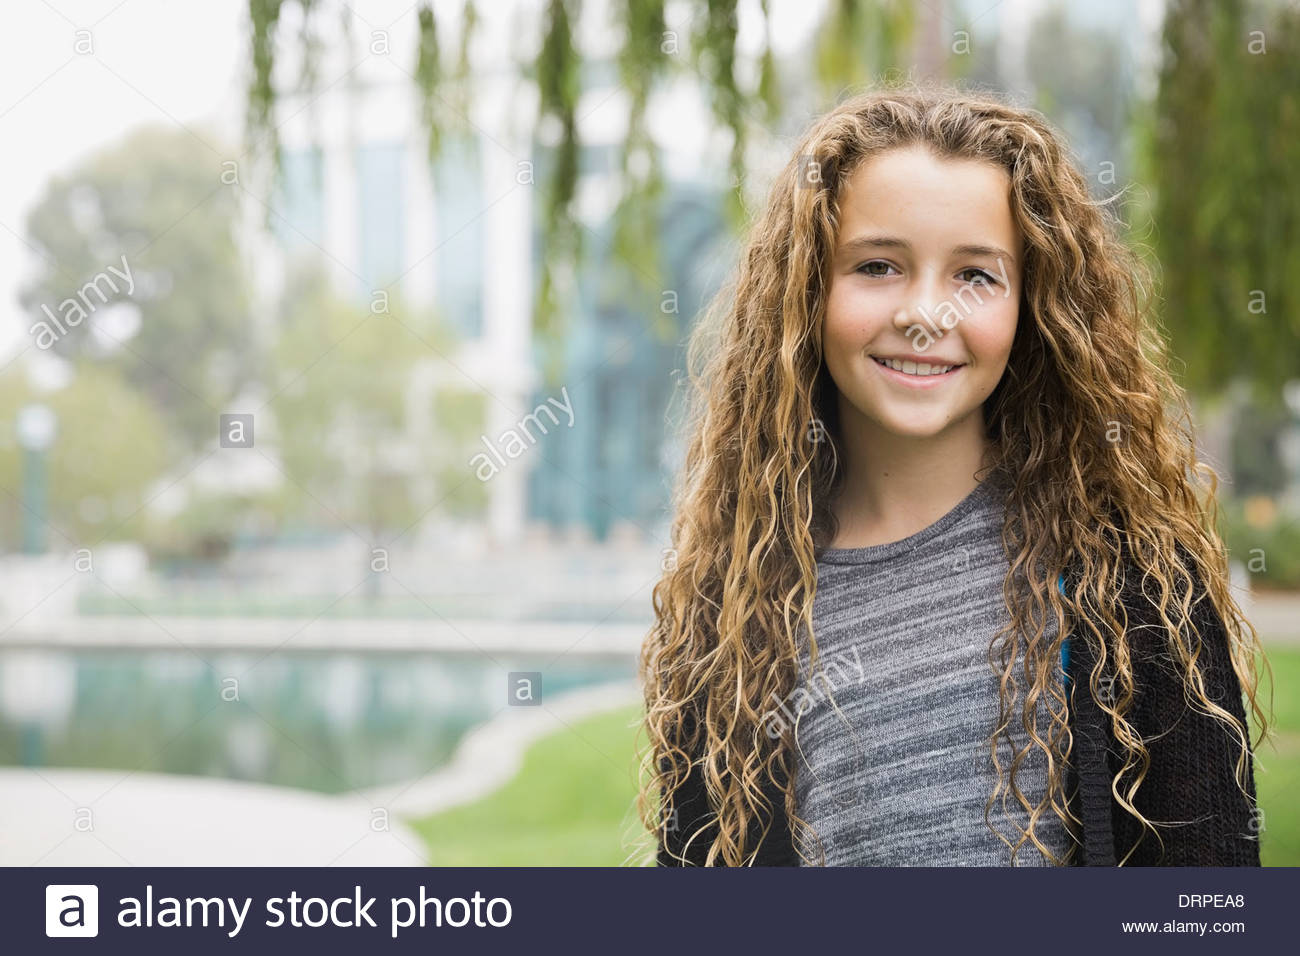 Retrato de niña sonriente en estacionamiento Foto de stock